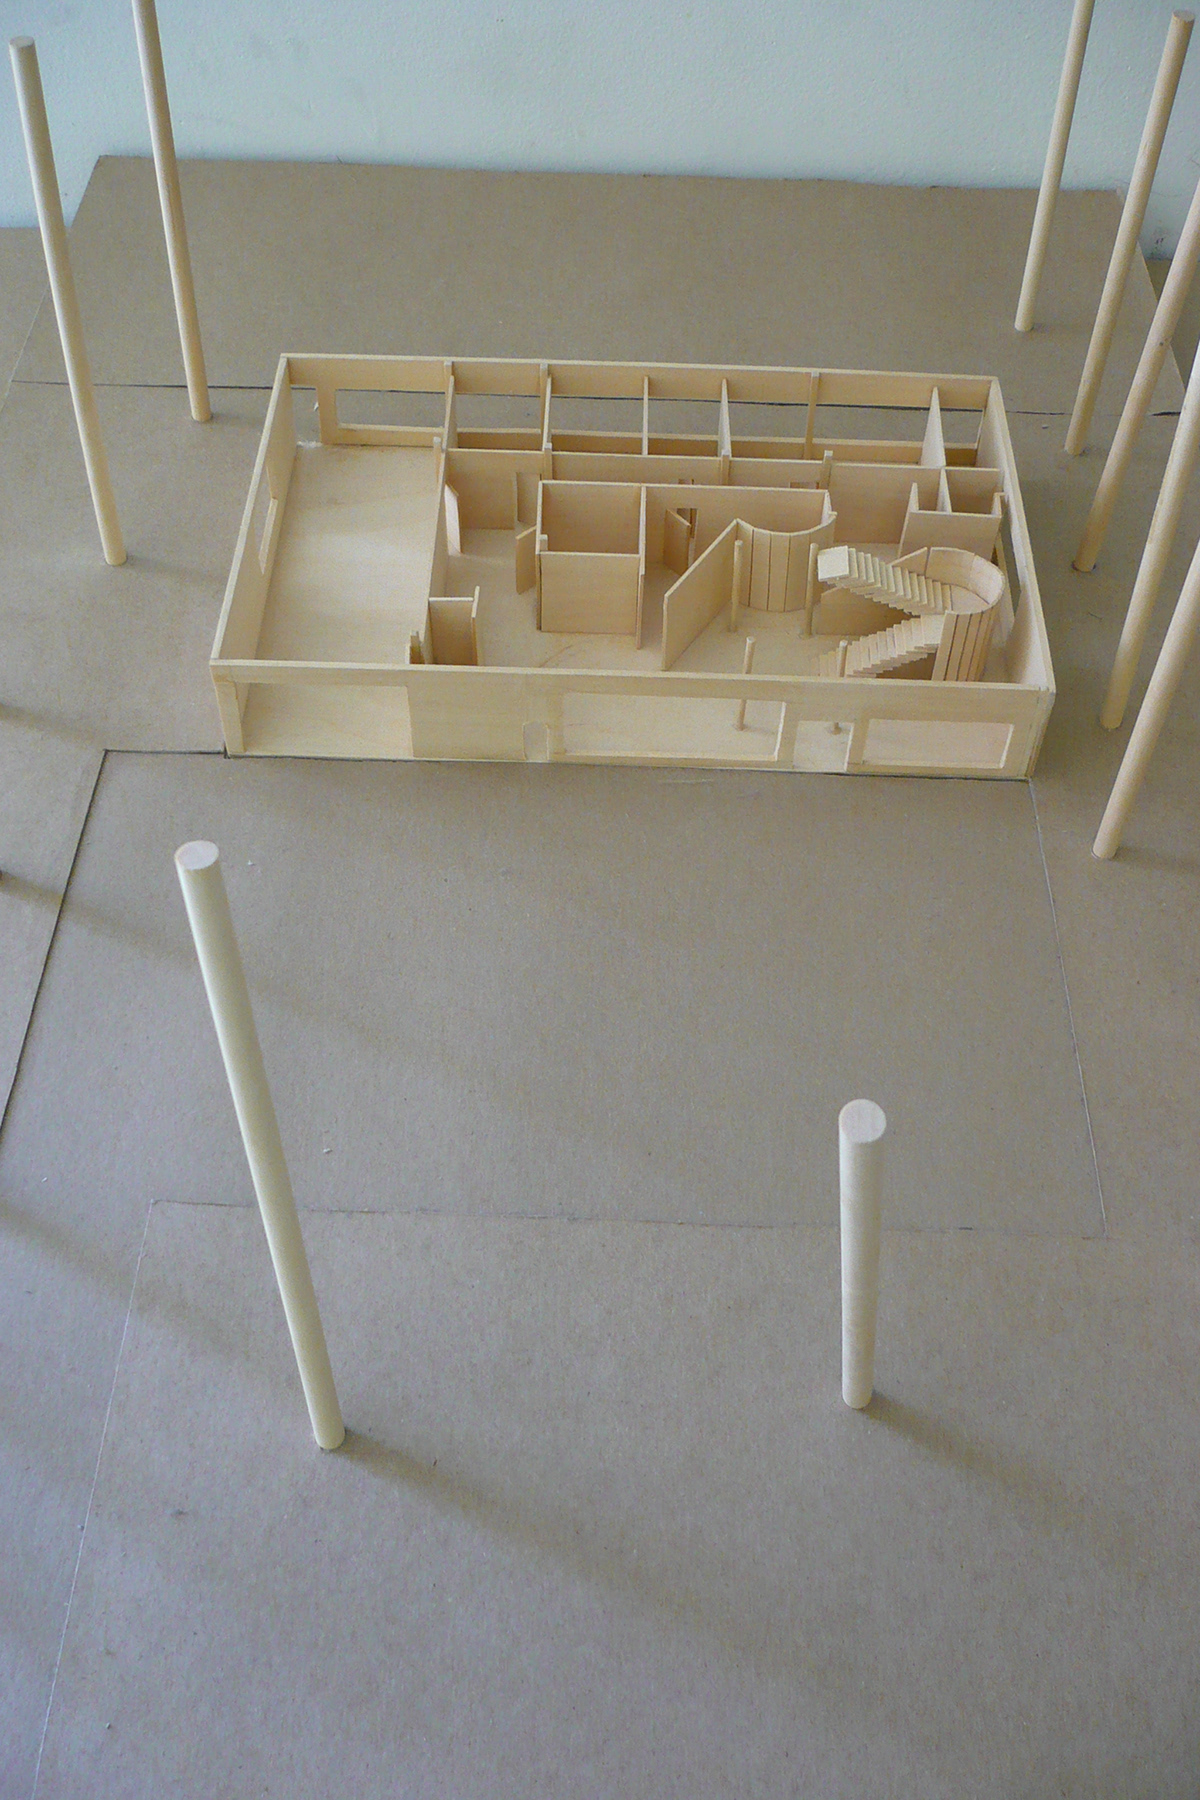 #Design II Corbusier Case Study modern architecture industrialism